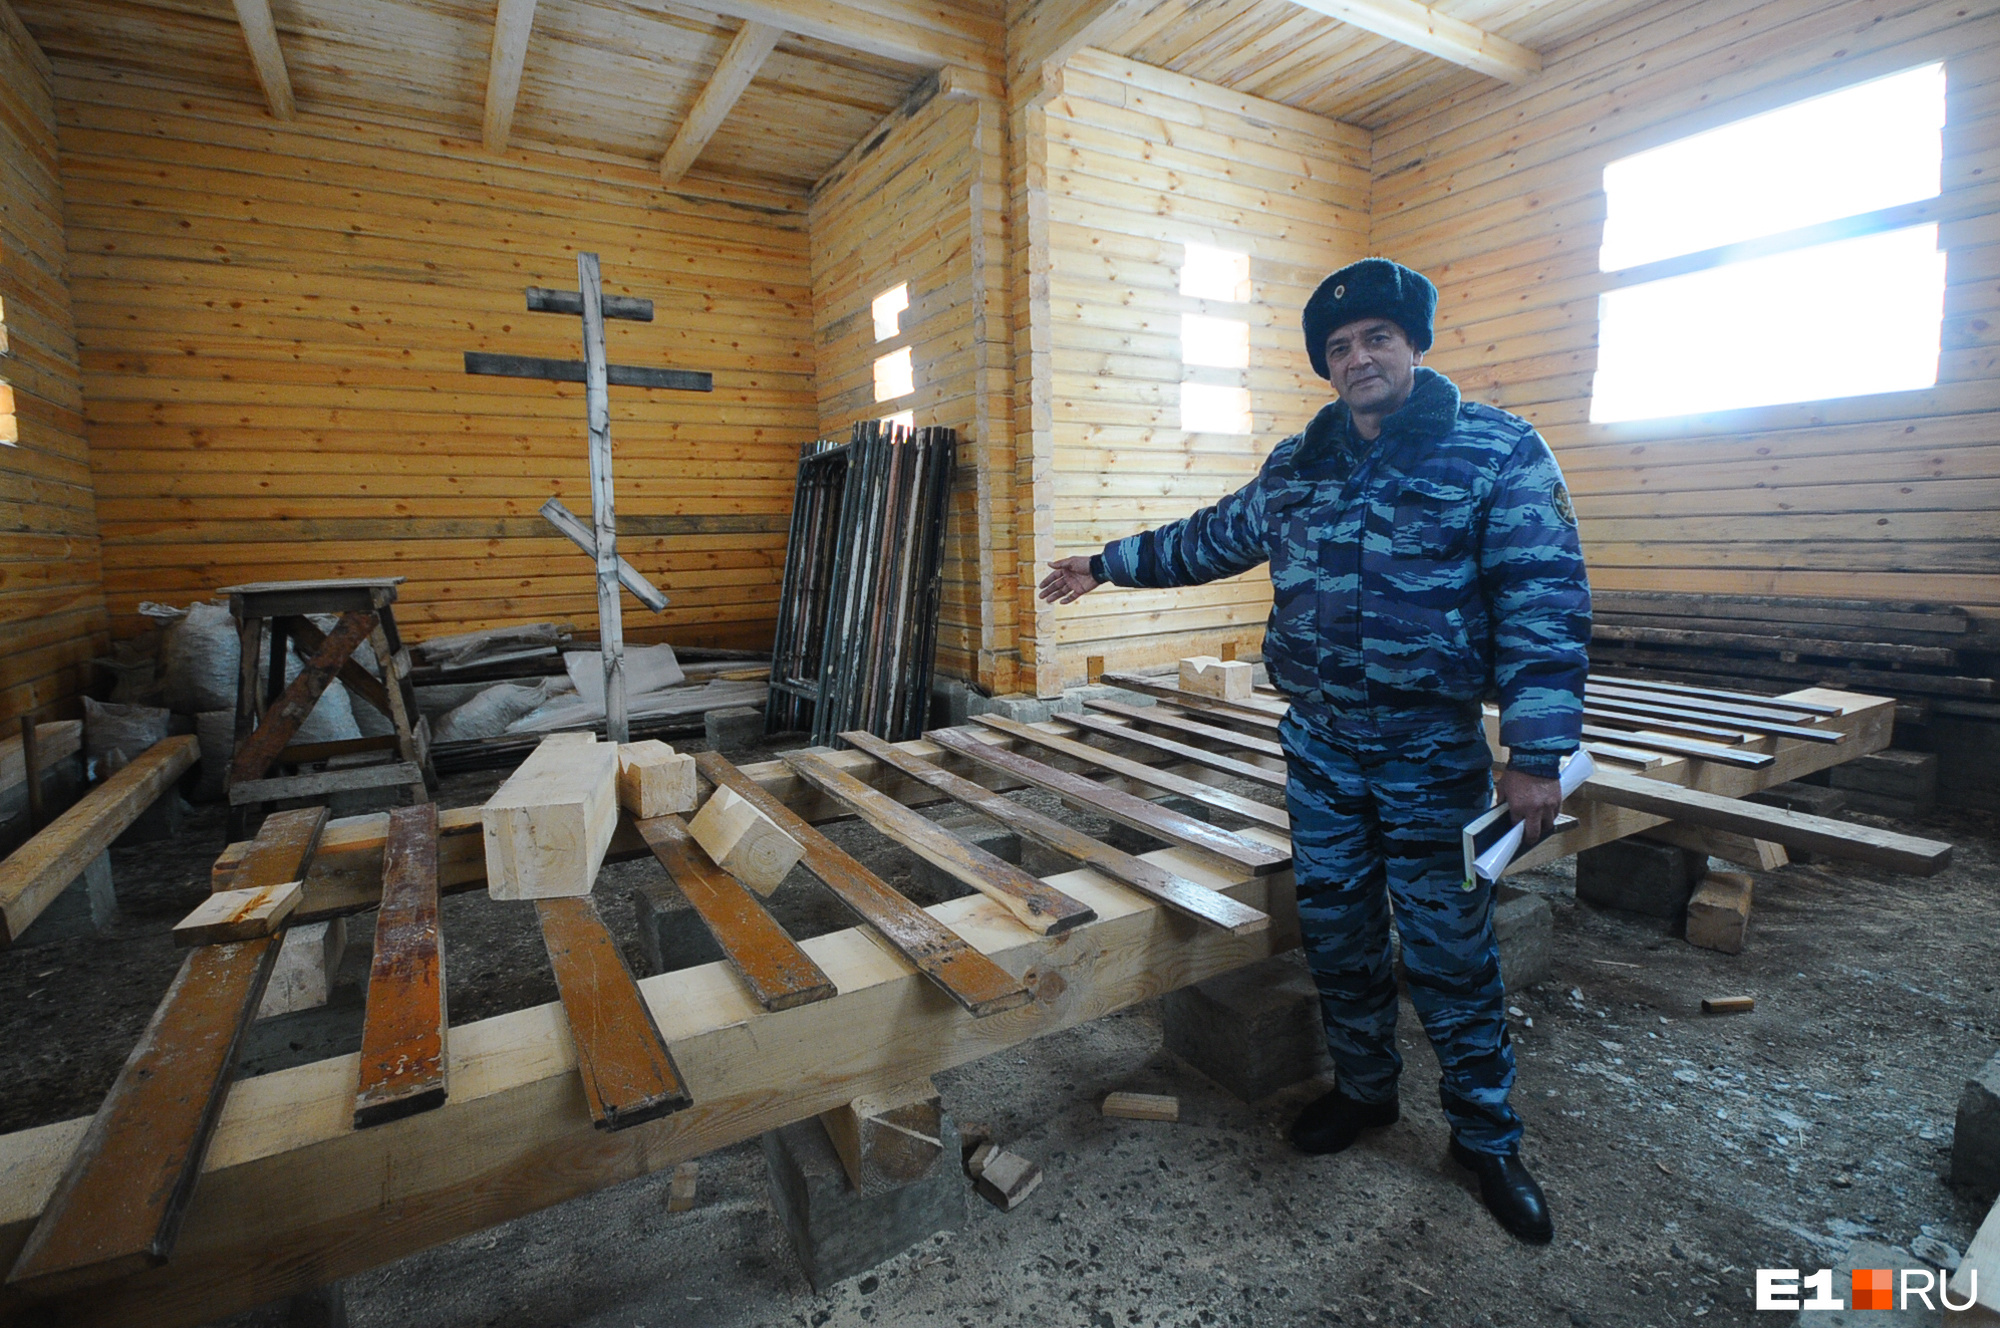 А вот сам Рафик Зиннатуллин. Здесь он показывает нашему фотографу, в каких хороших условиях живут и трудятся заключенные ИК-54